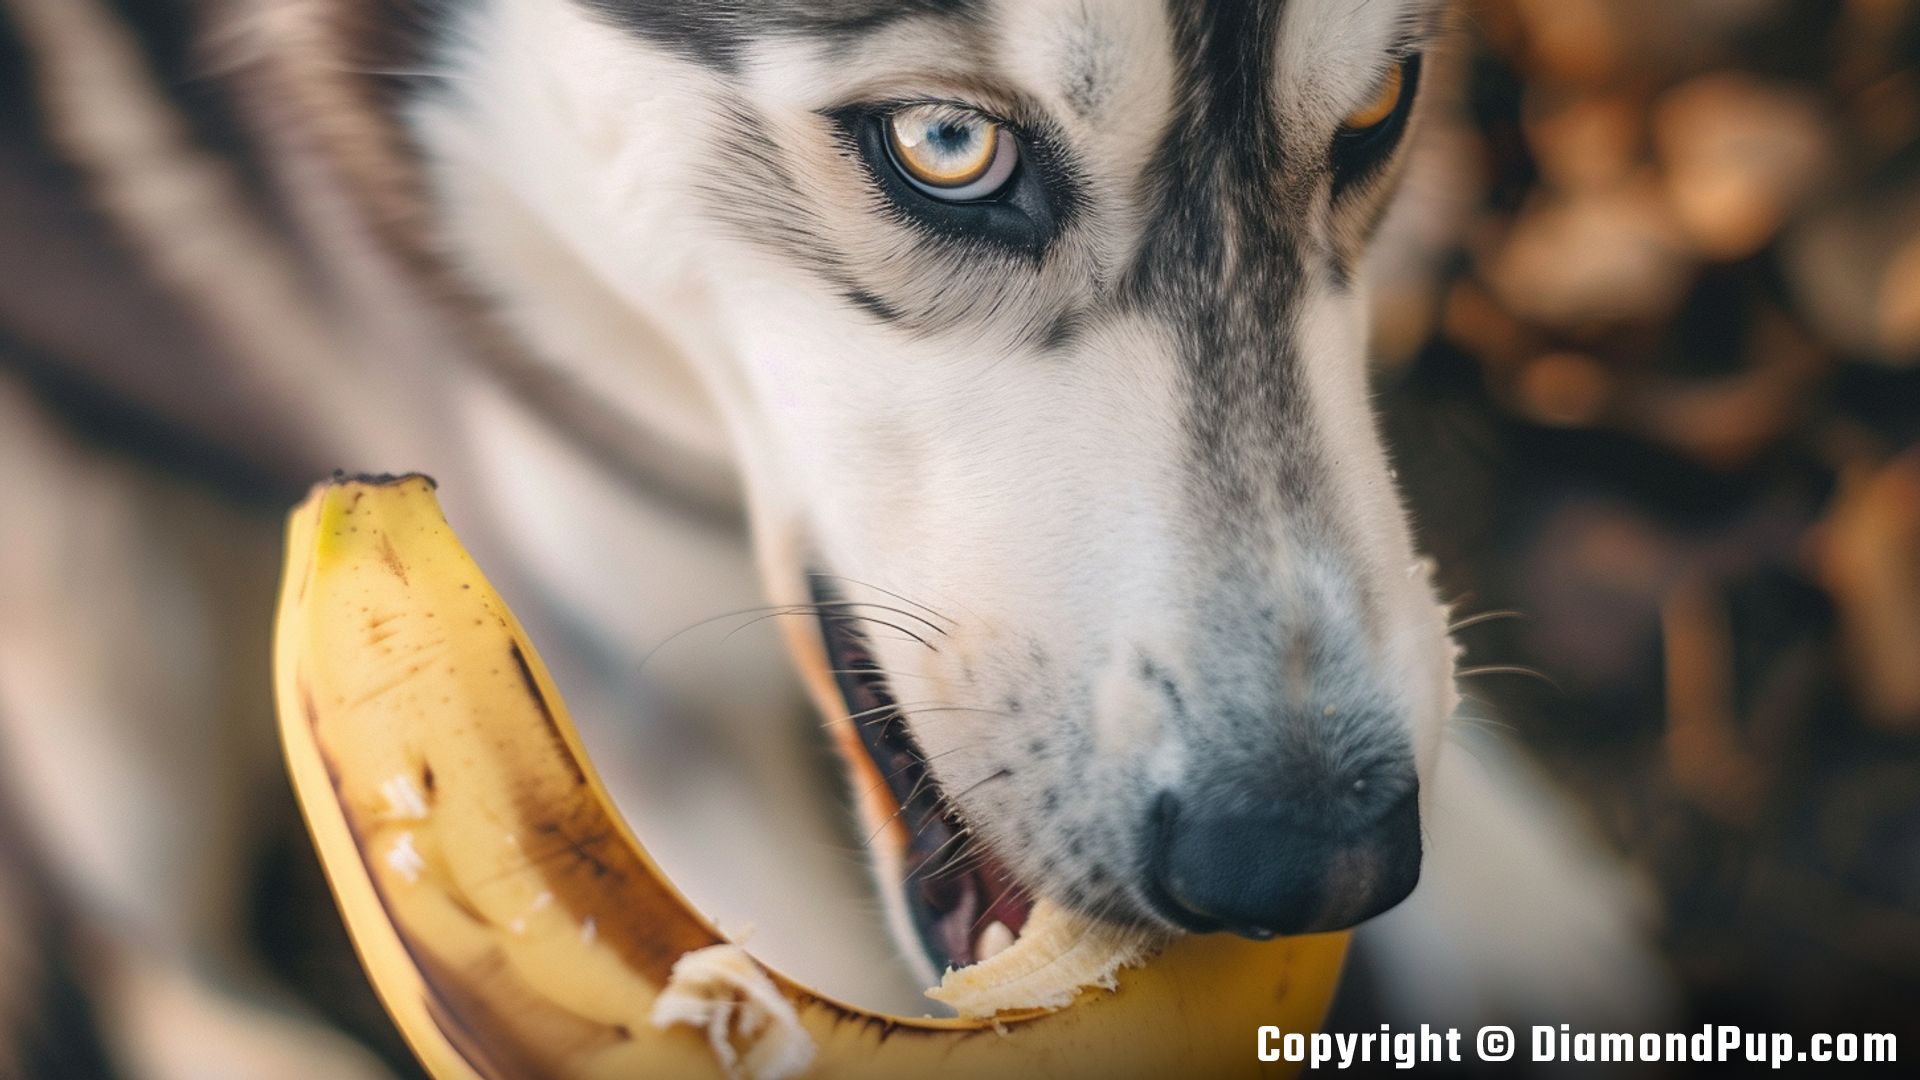 Image of an Adorable Husky Snacking on Banana